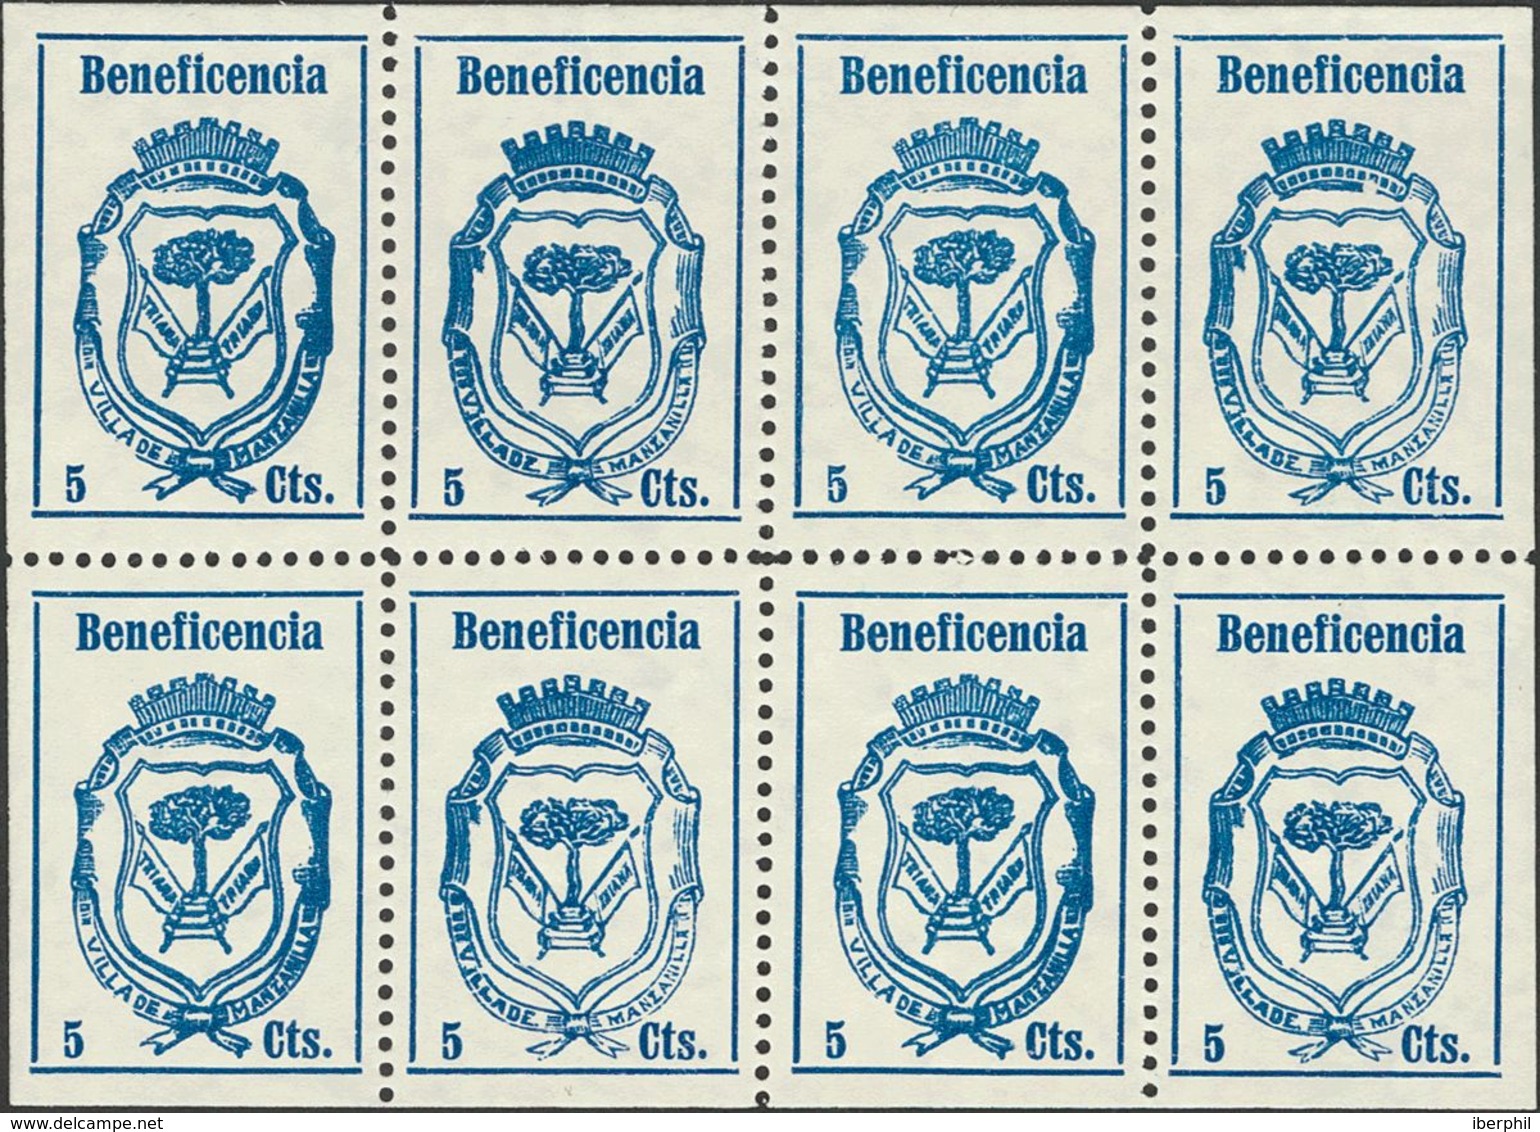 (*). 1937. MANZANILLA (HUELVA). 5 Cts Azul, Hoja Completa De Ocho Sellos. Contiene Las Variedades De Cliché Conocidas. M - Spanish Civil War Labels